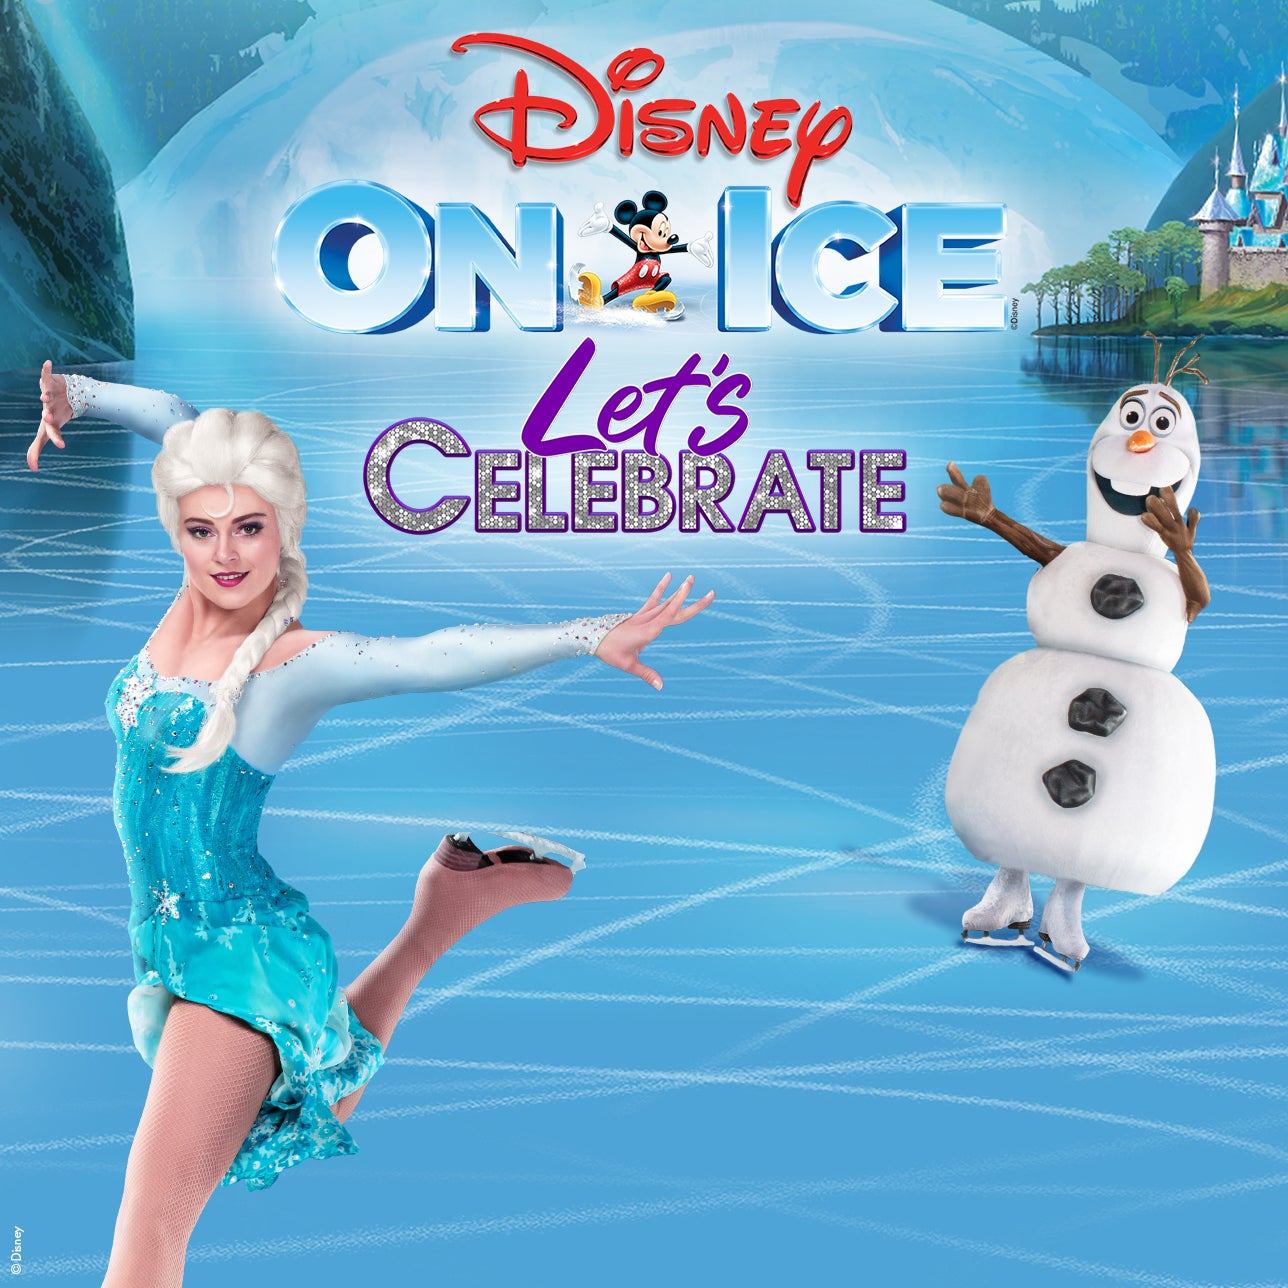 Disney On Ice presents Let’s Celebrate